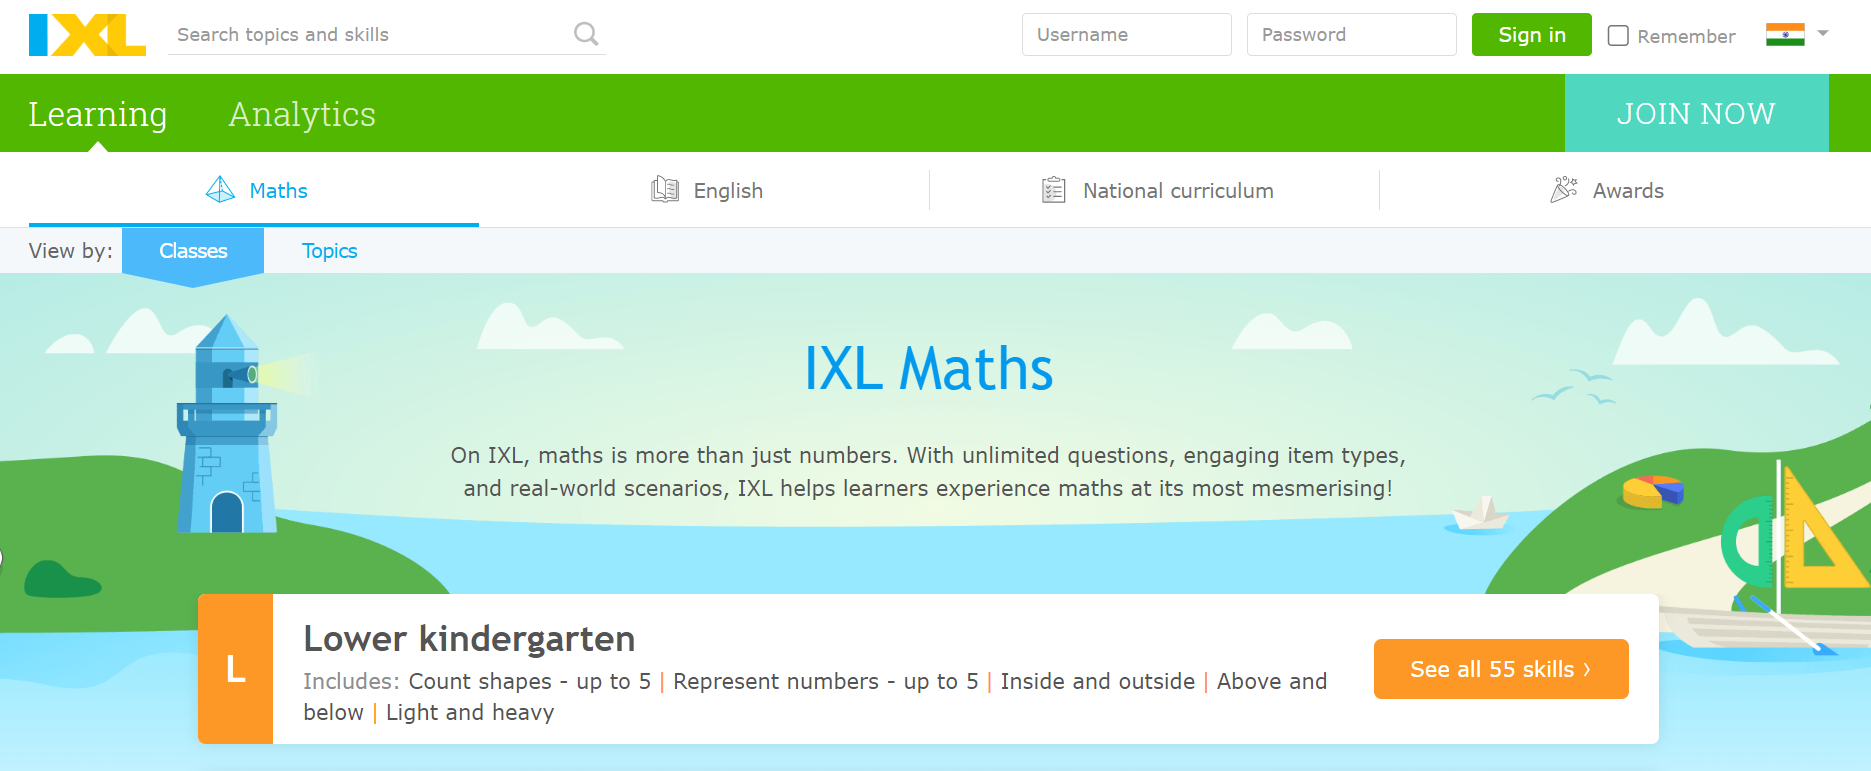 IXL Math